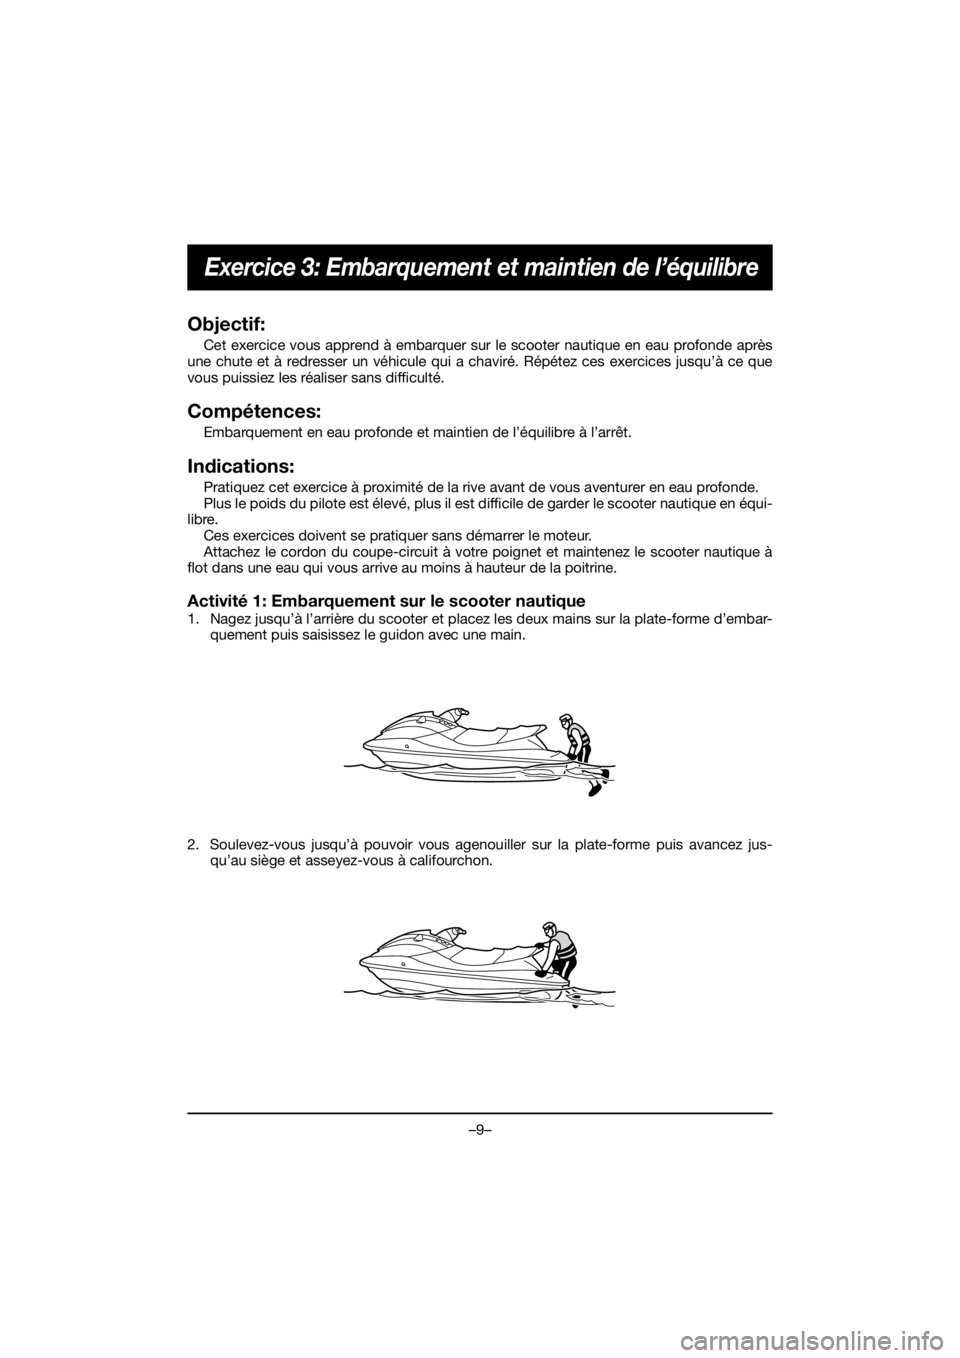 YAMAHA FJR1300 2019 Owners Guide –9–
Exercice 3: Embarquement et maintien de l’équilibre
Objectif:
Cet exercice vous apprend à embarquer sur le scooter nautique en eau profonde après
une chute et à redresser un véhicule qu